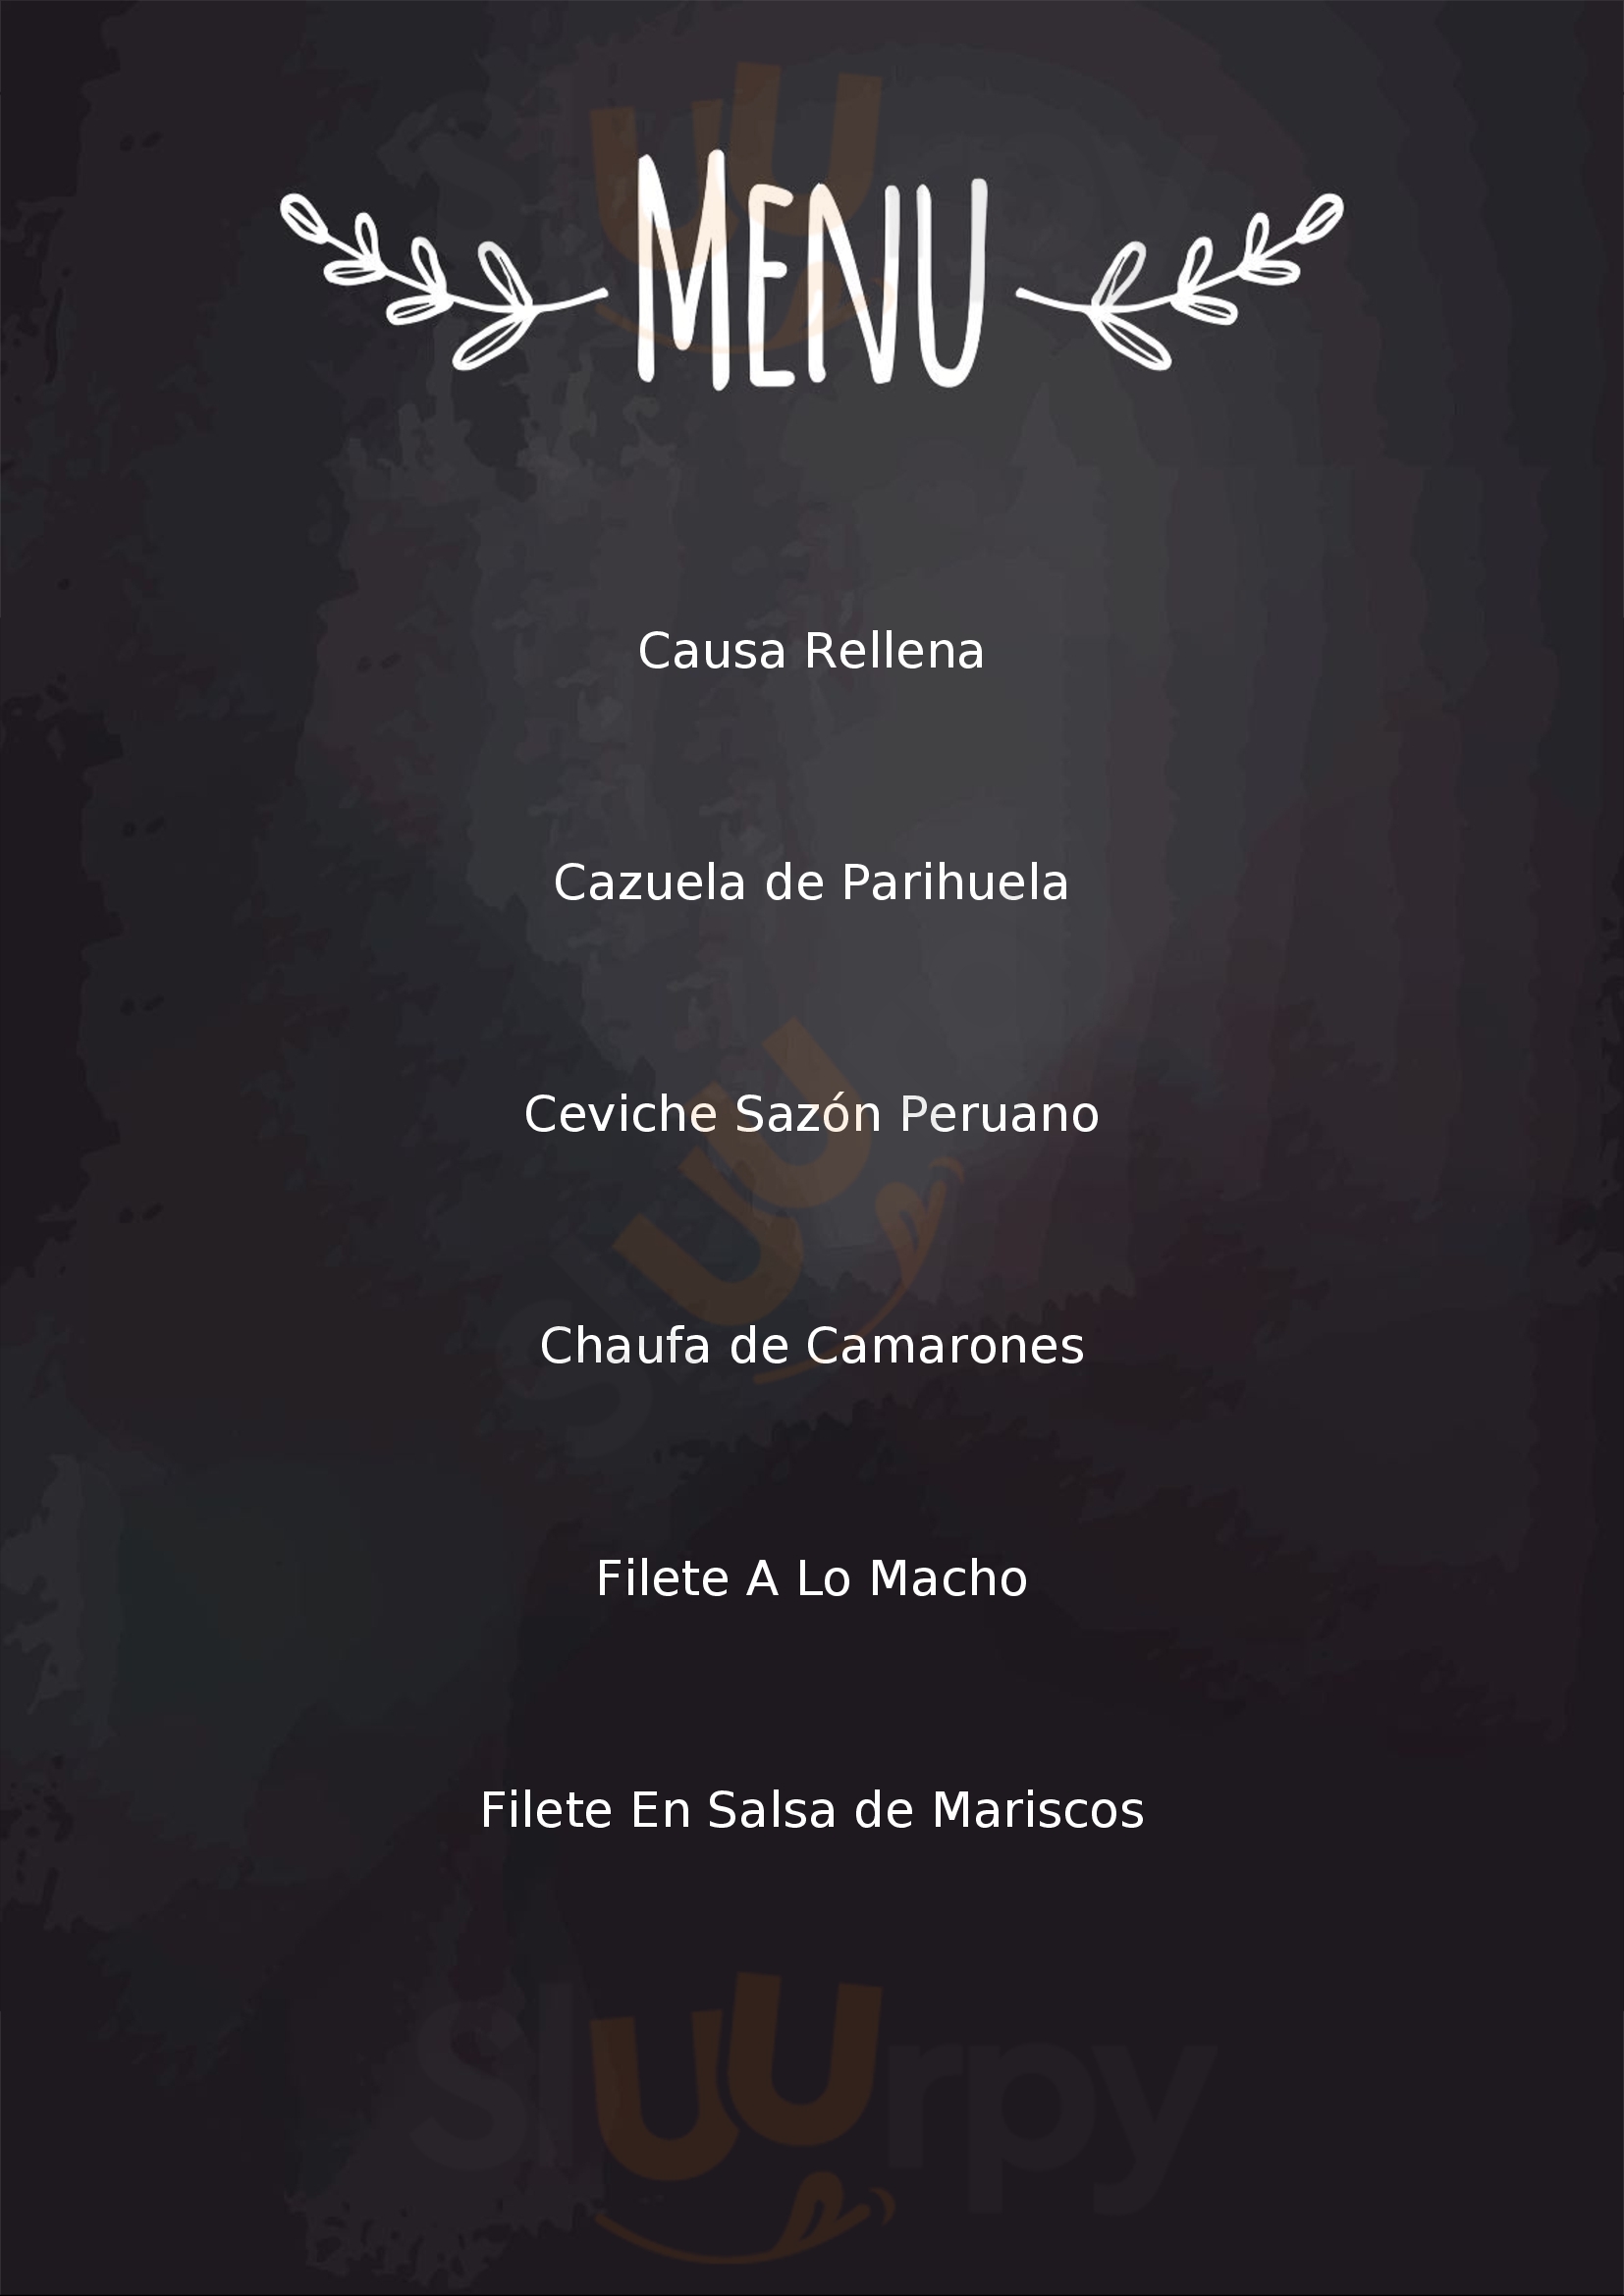 Sazón Peruano Villa de Leyva Menu - 1